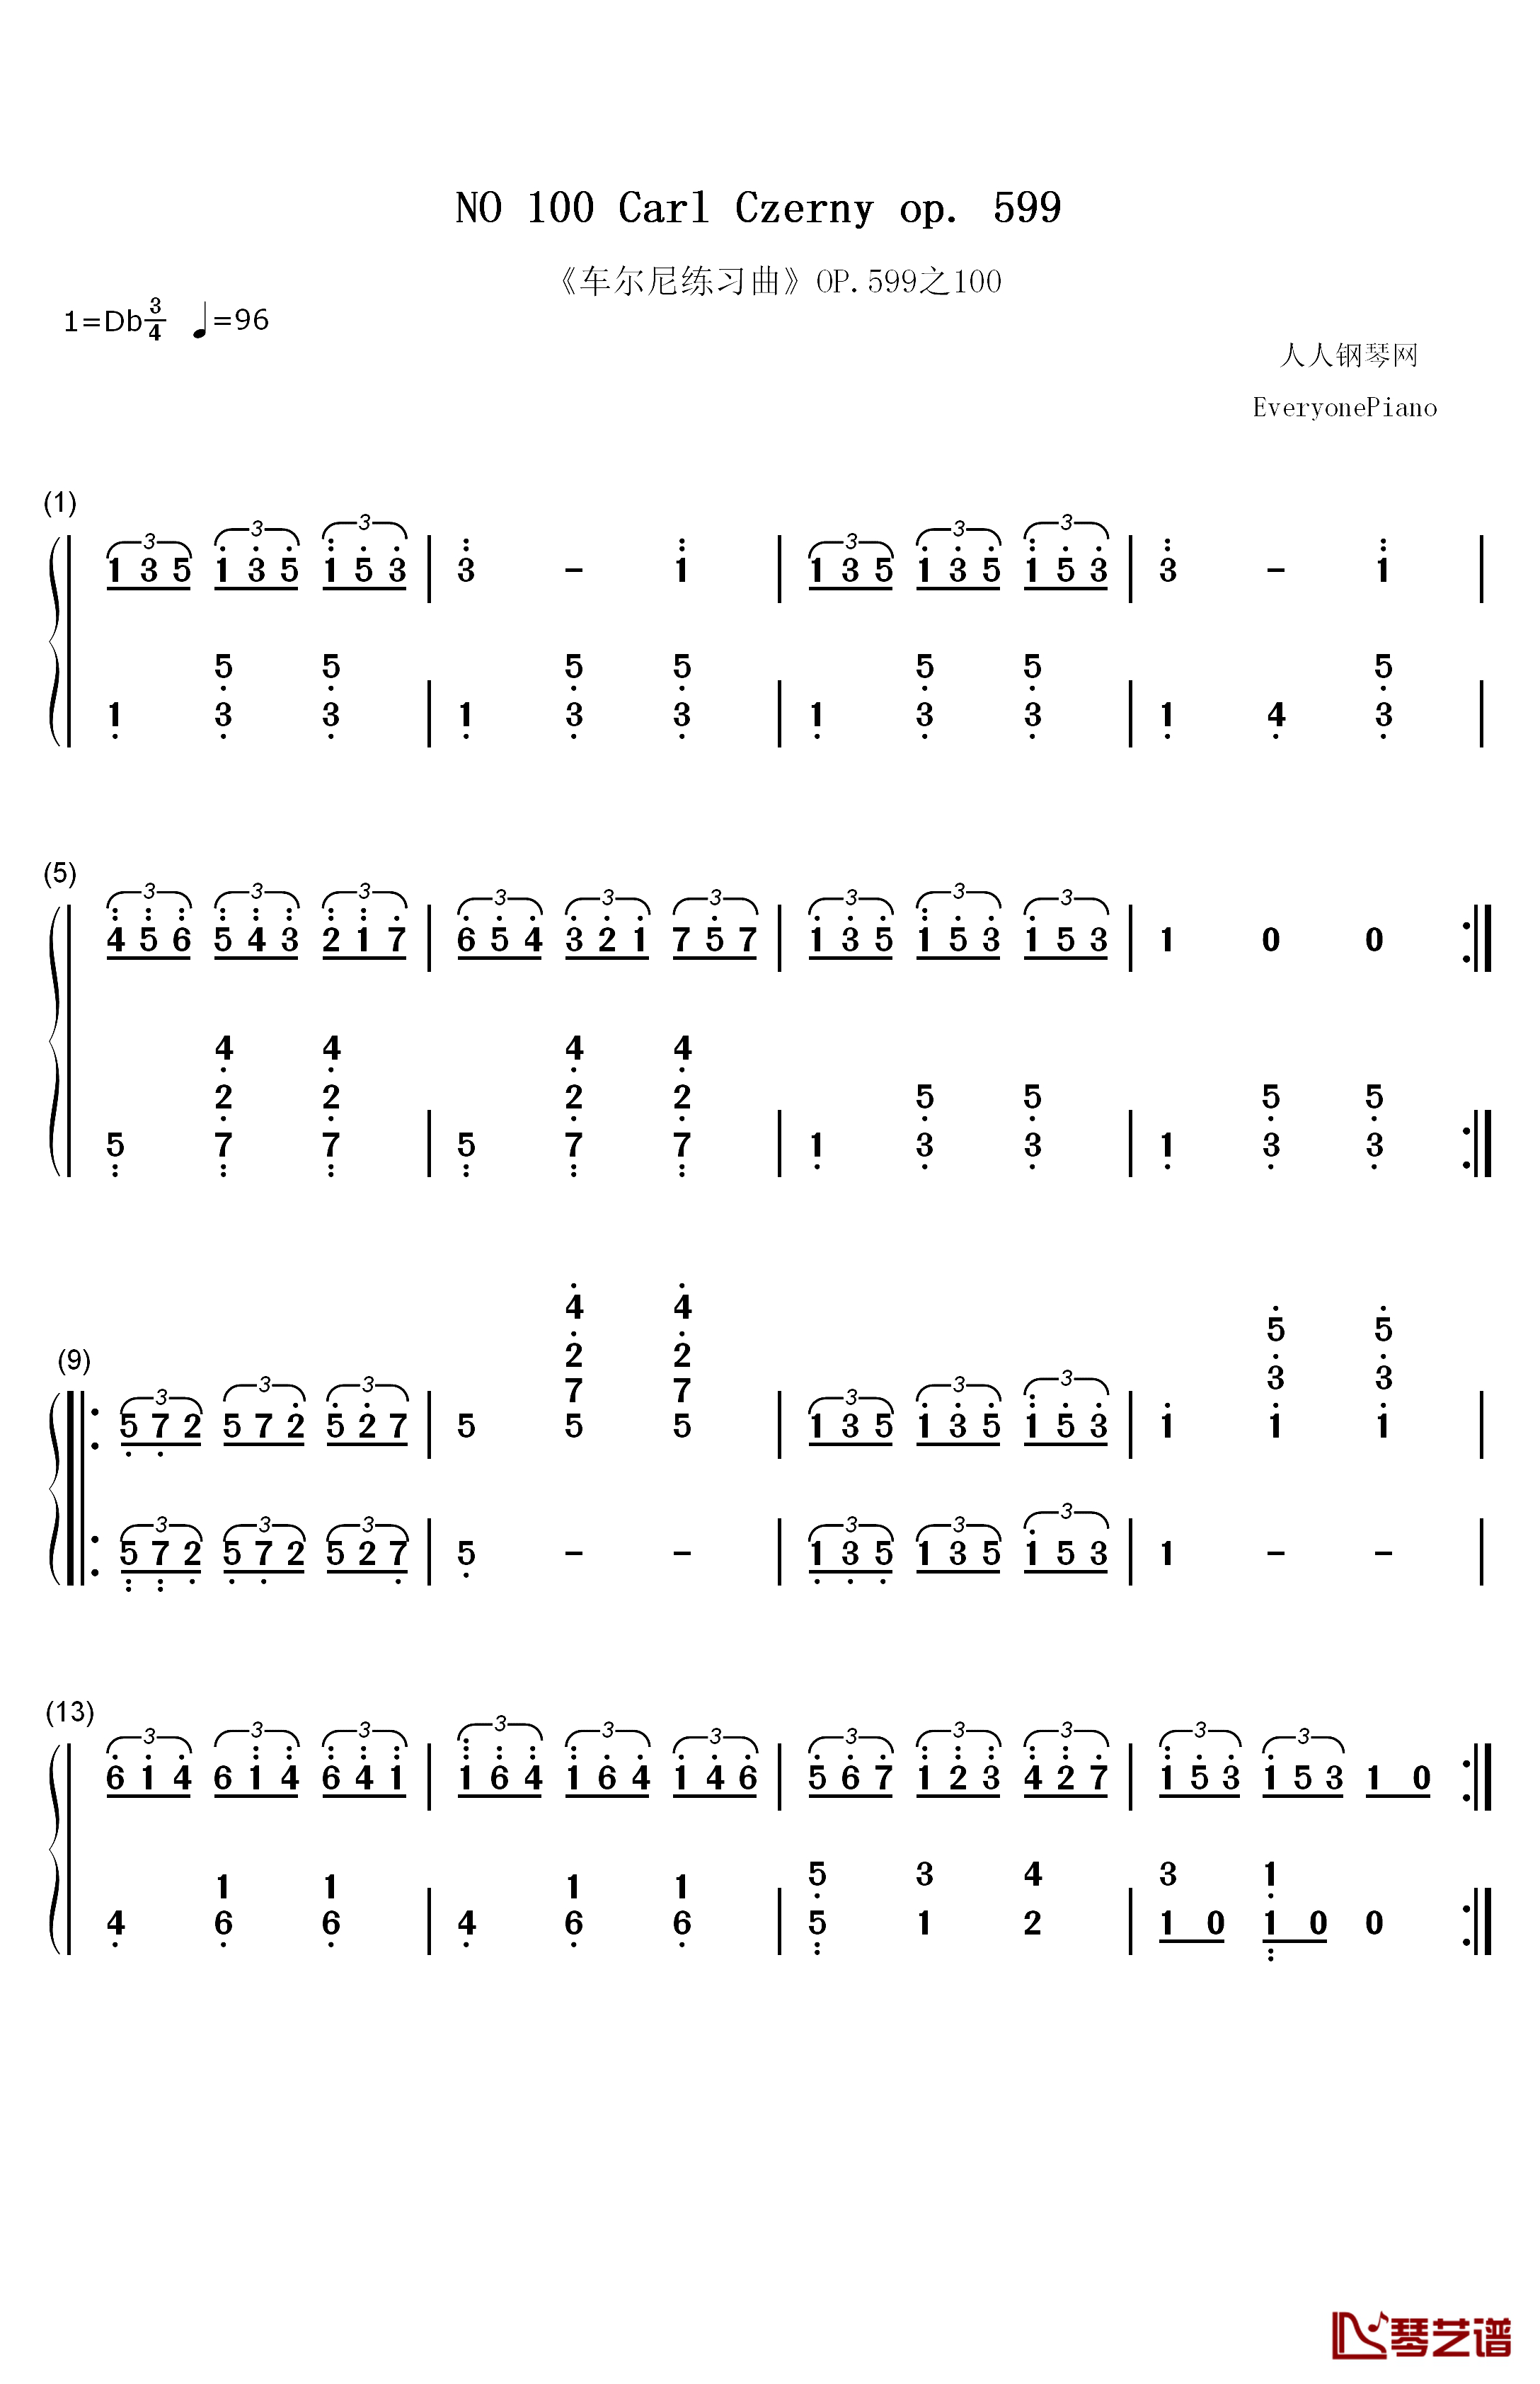 《车尔尼练习曲》OP.599之100钢琴简谱-数字双手-车尔尼1